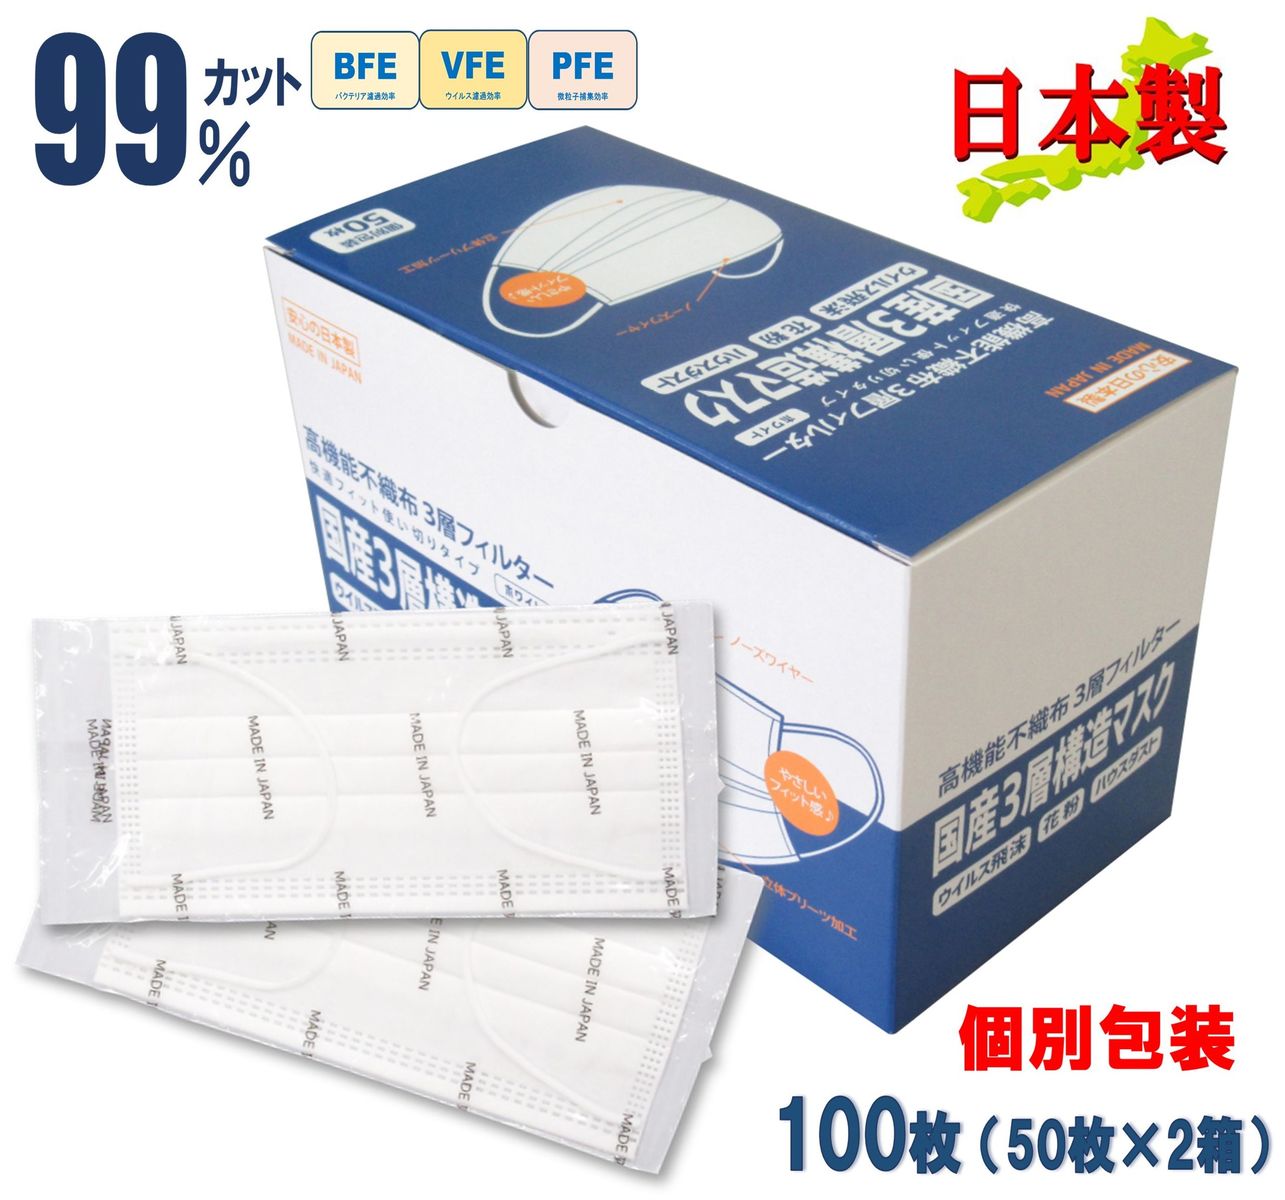 山陽物産 不織布マスク 個包装 100枚 日本製 白色 無地